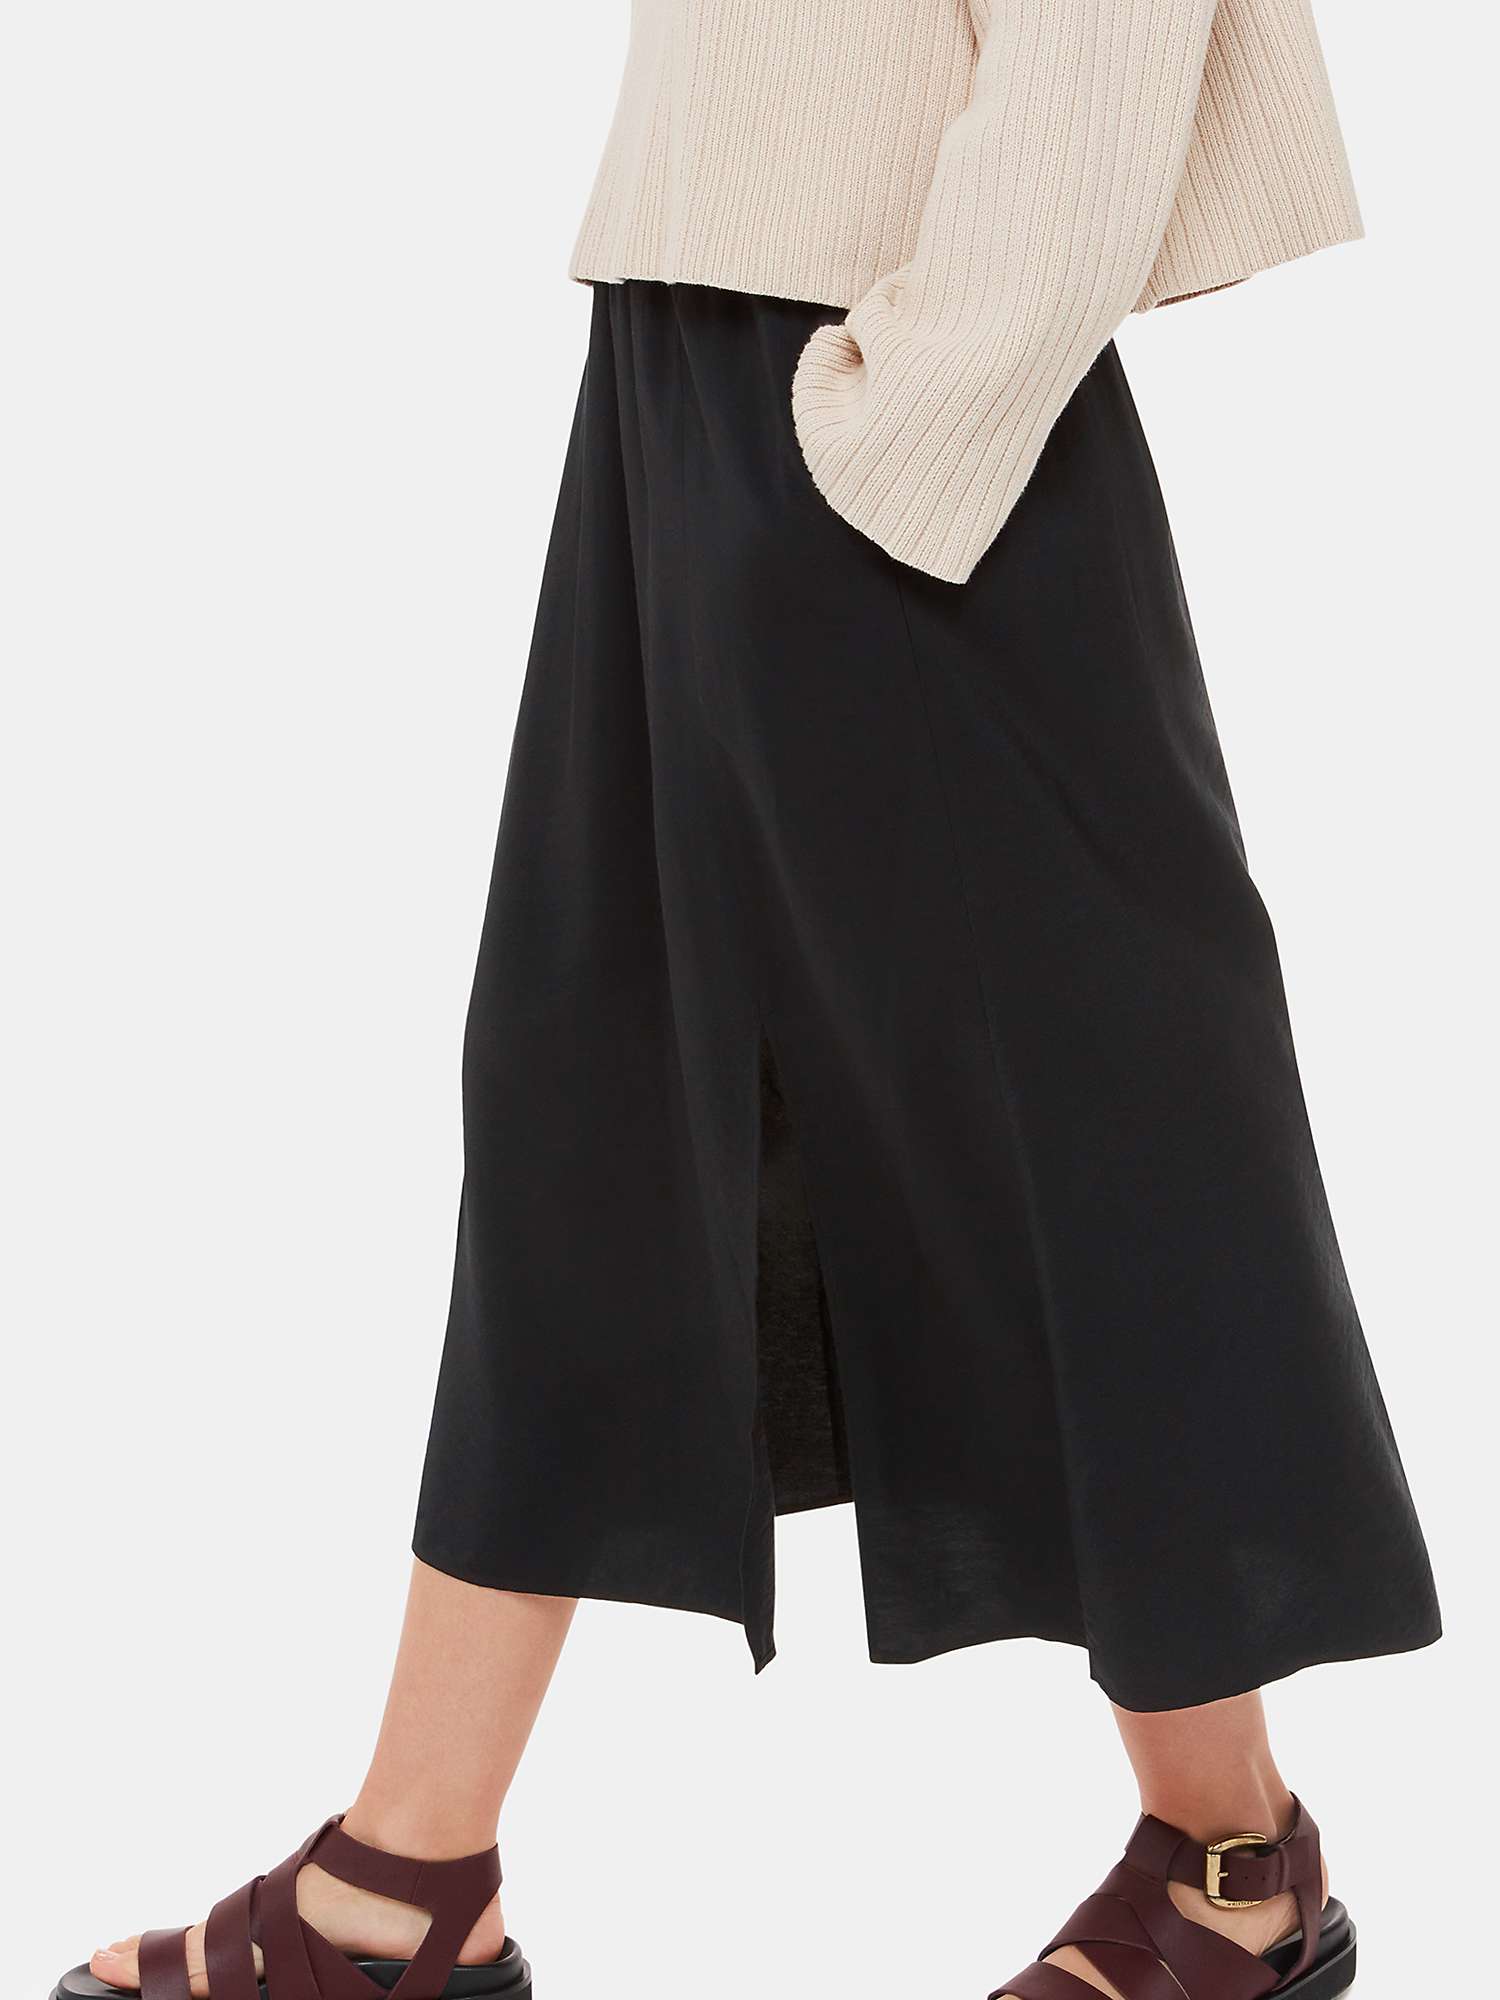 Buy Whistles Eva Elasticated Waist Midi Skirt, Black Online at johnlewis.com